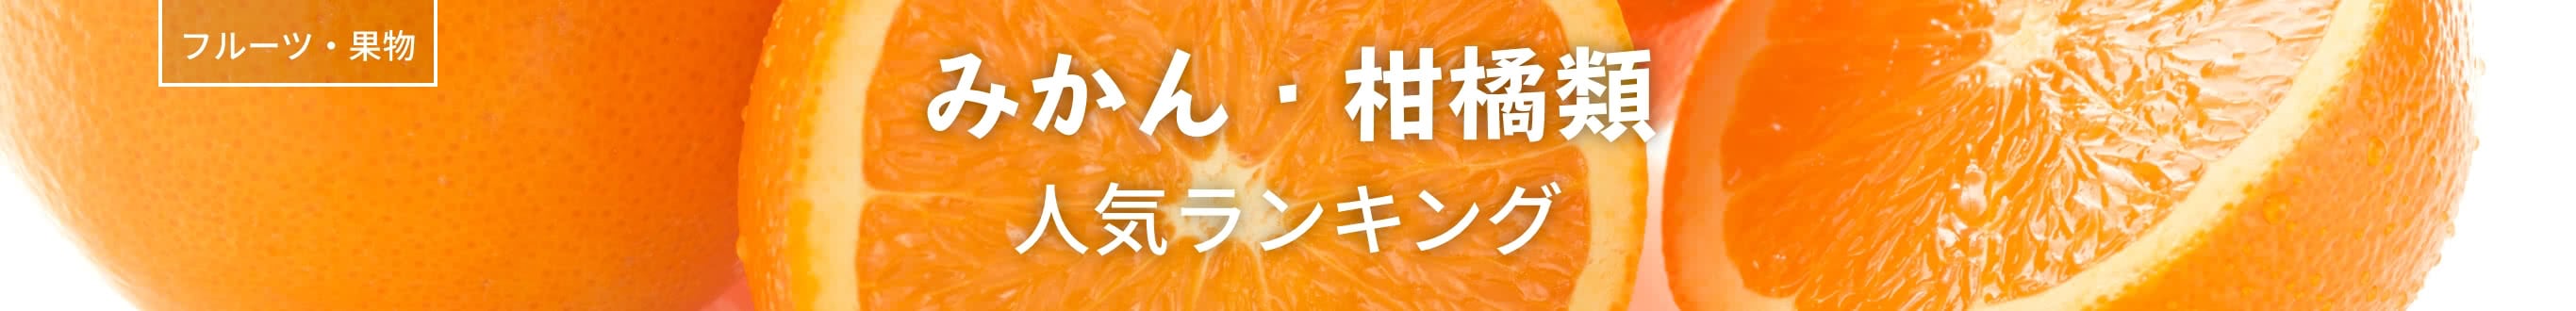 みかん・柑橘類人気ランキング